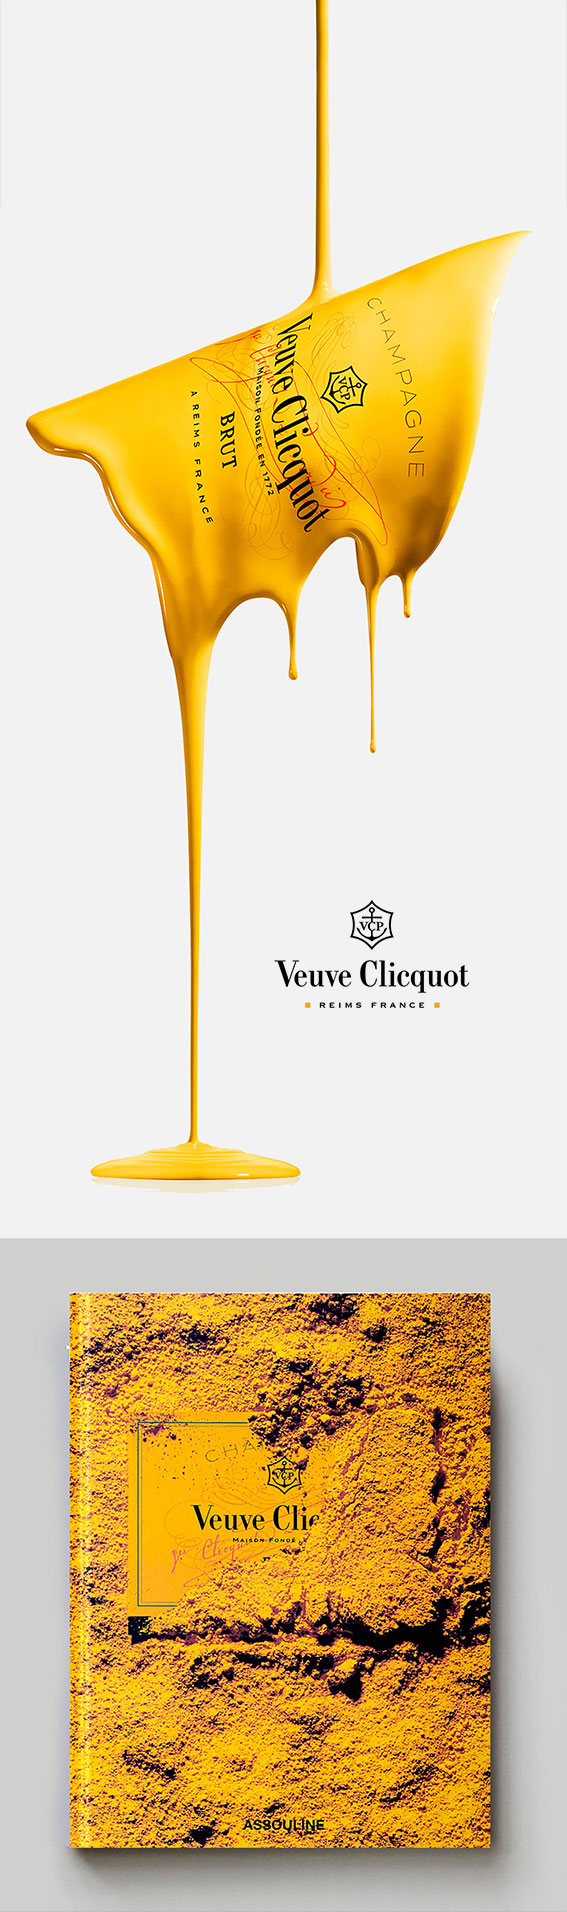 Veuve Clicquot I Art Print